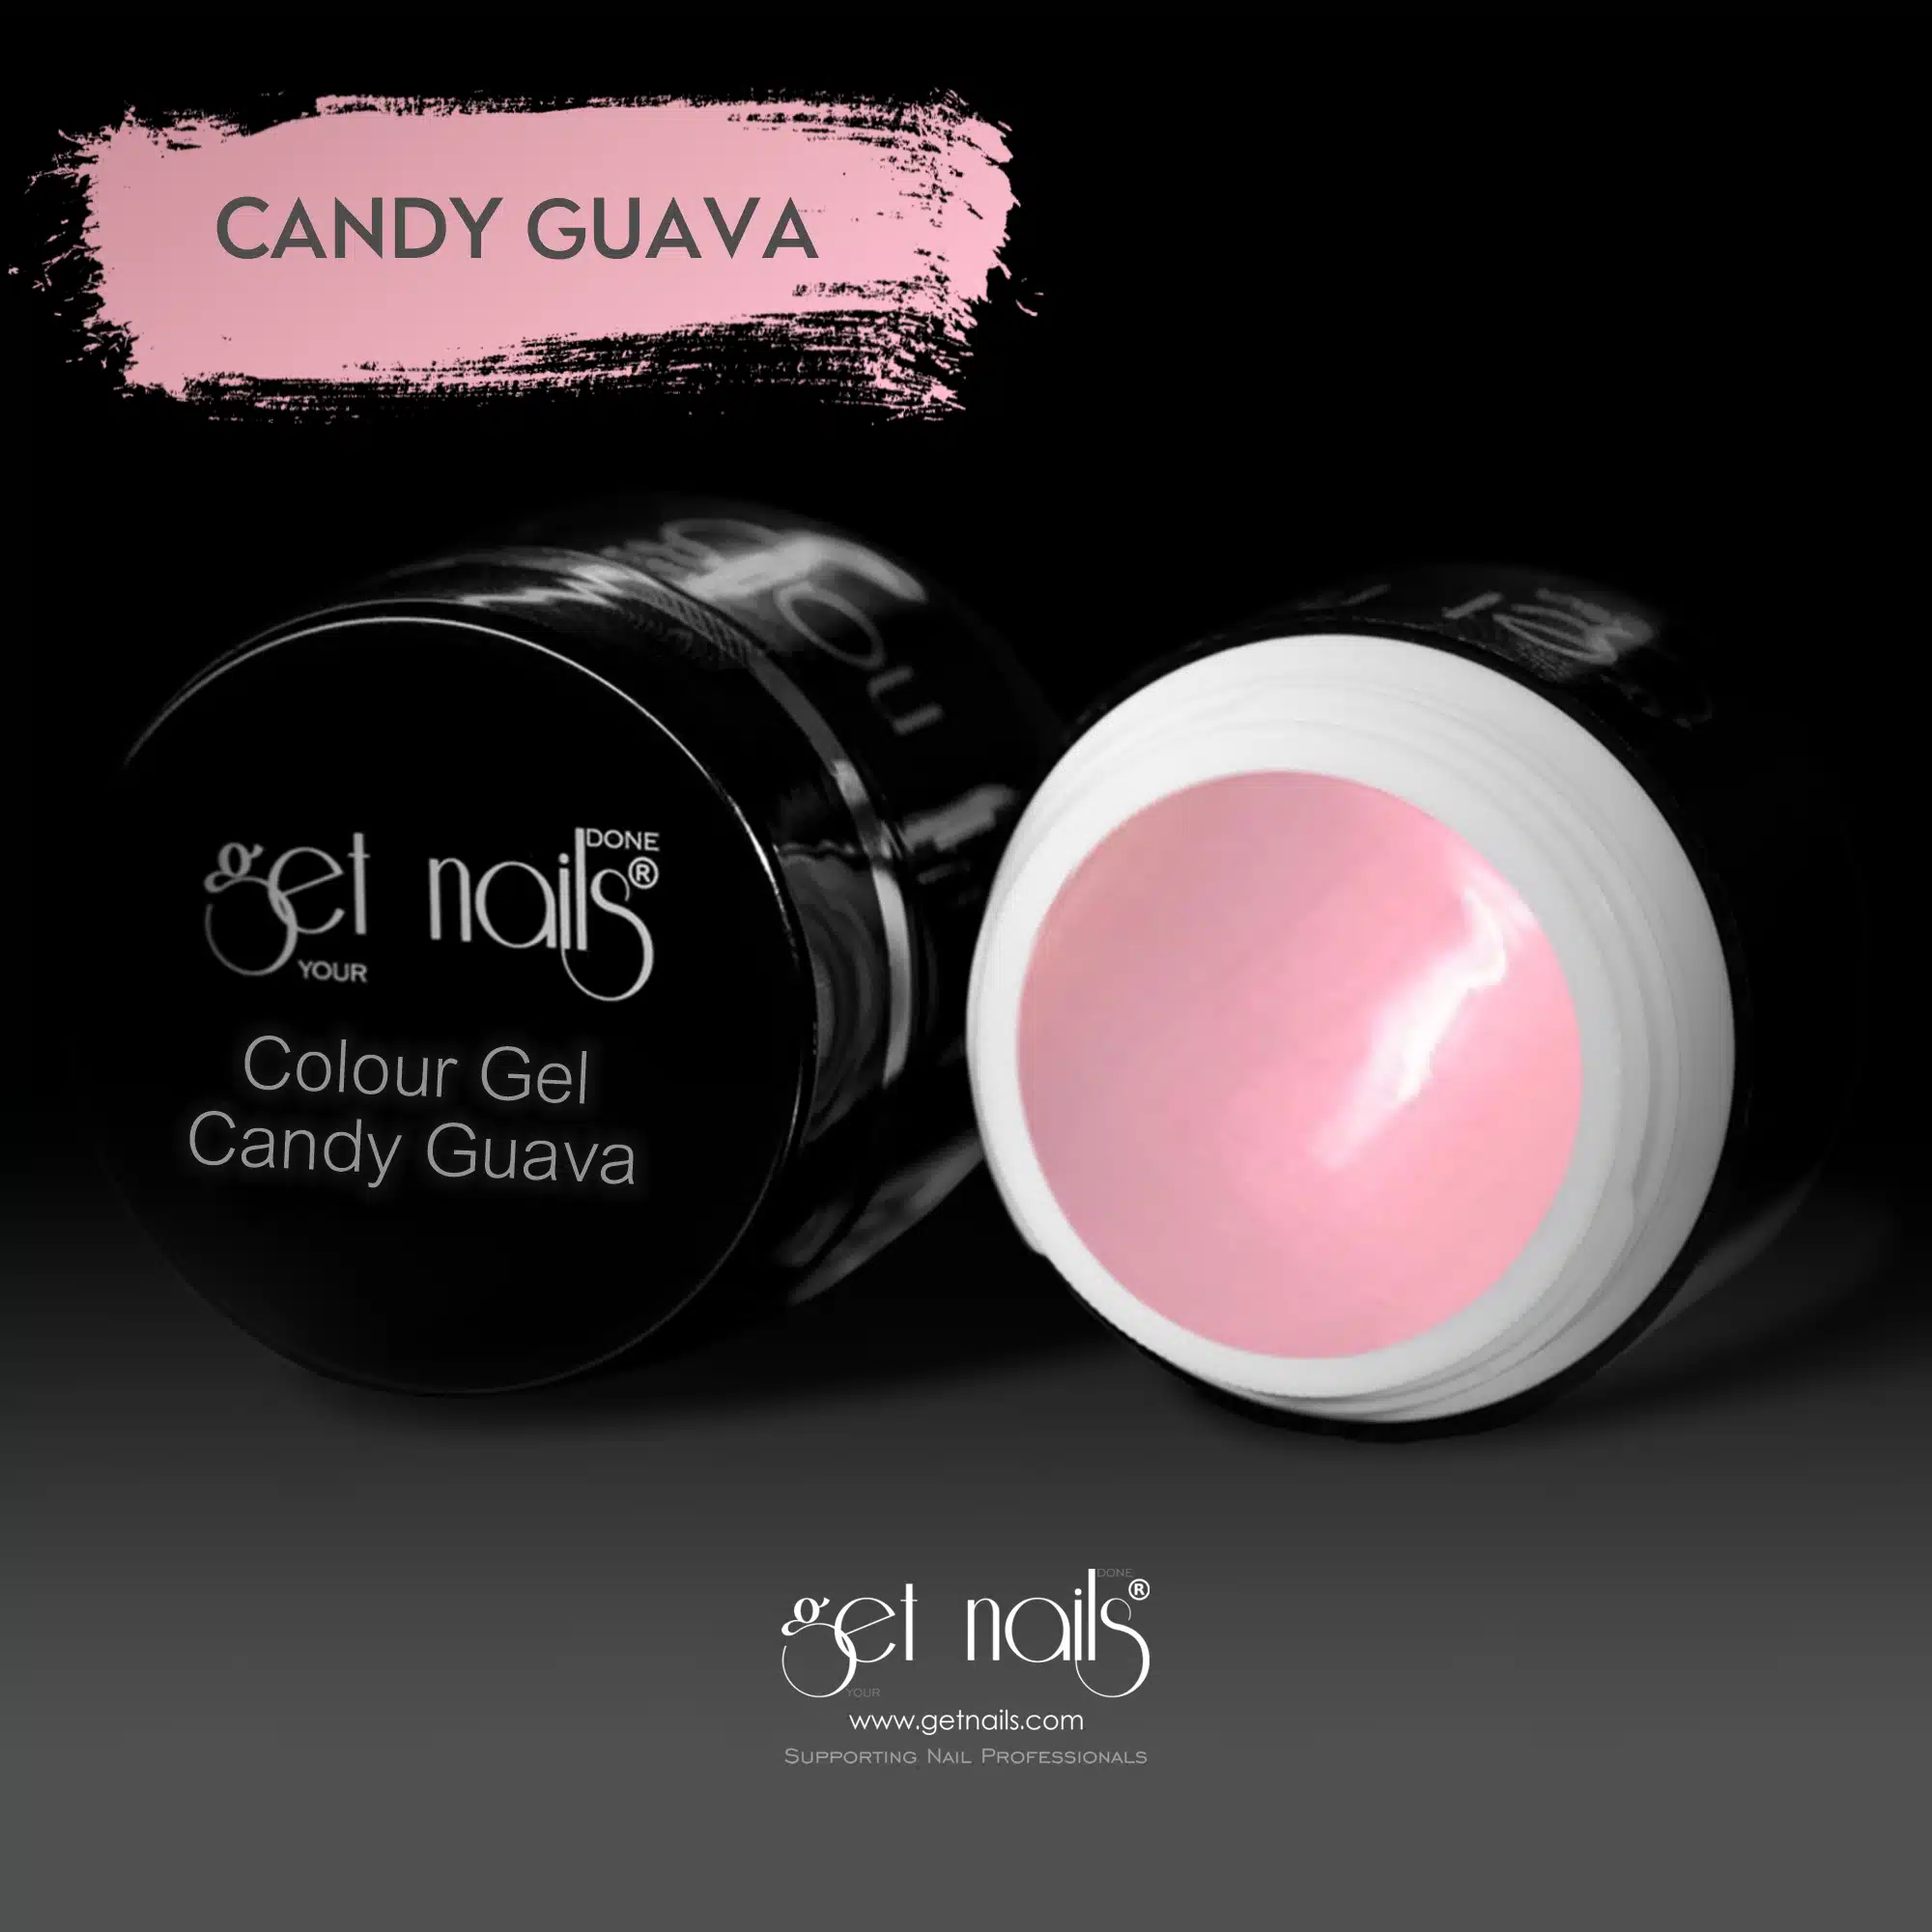 Get Nails Austria - Colour Gel Candy Guava 5g